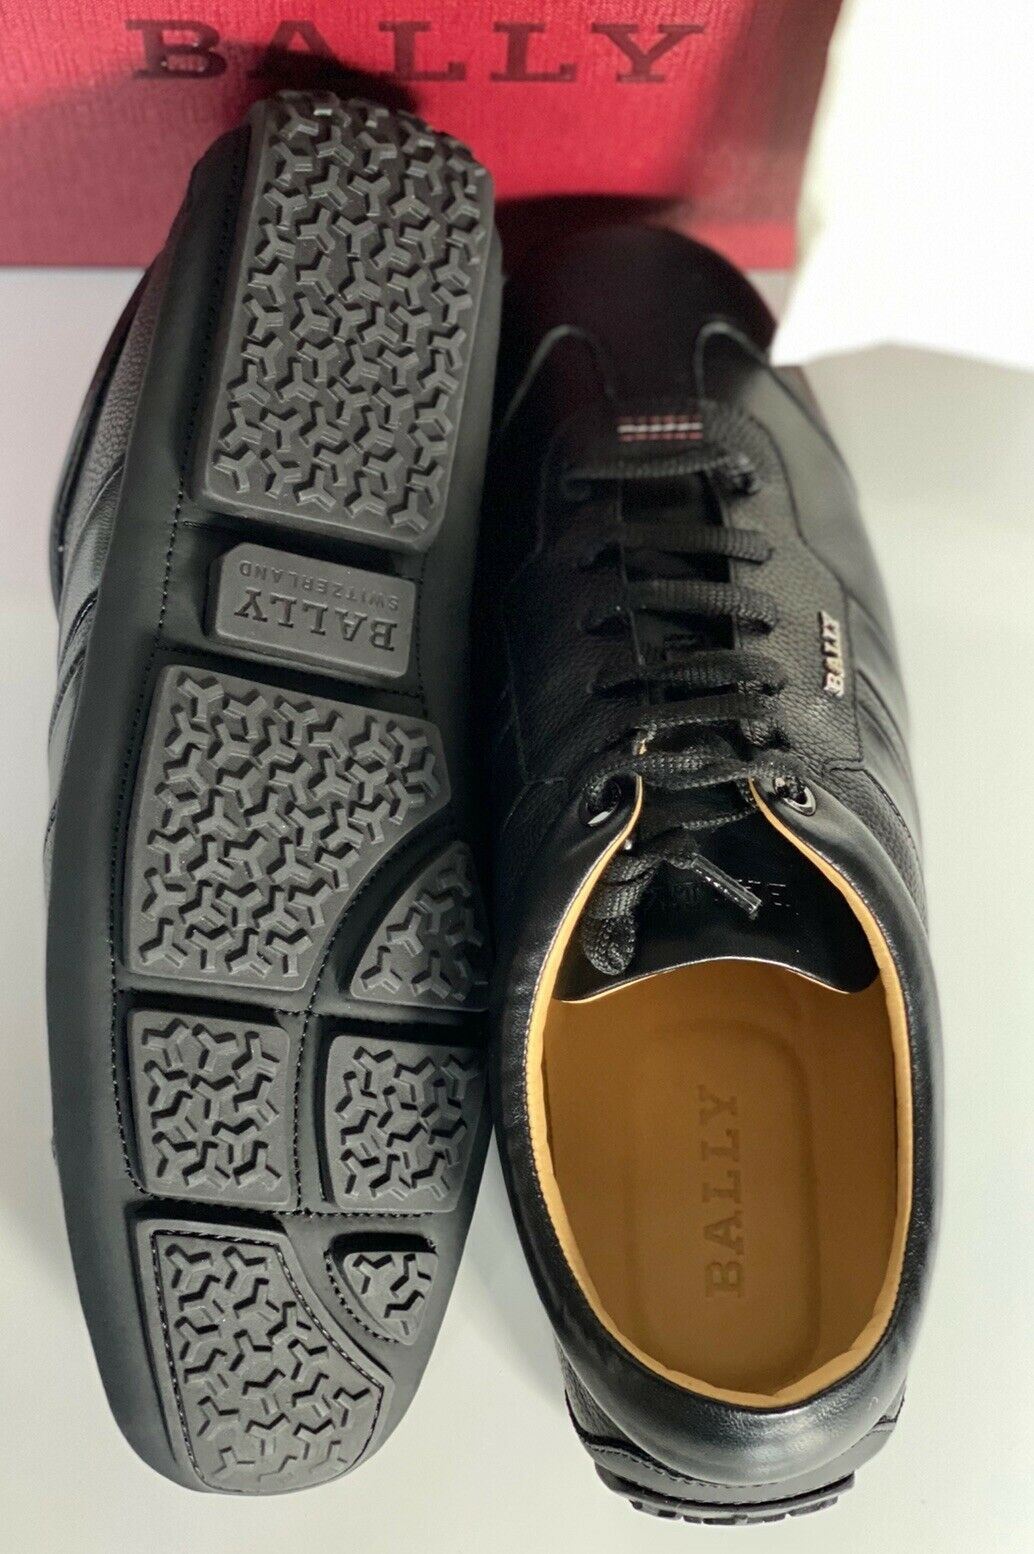 NIB Bally Primer Mens Bovine Embossed Leather Sneakers Black 10 EEE US 6234861